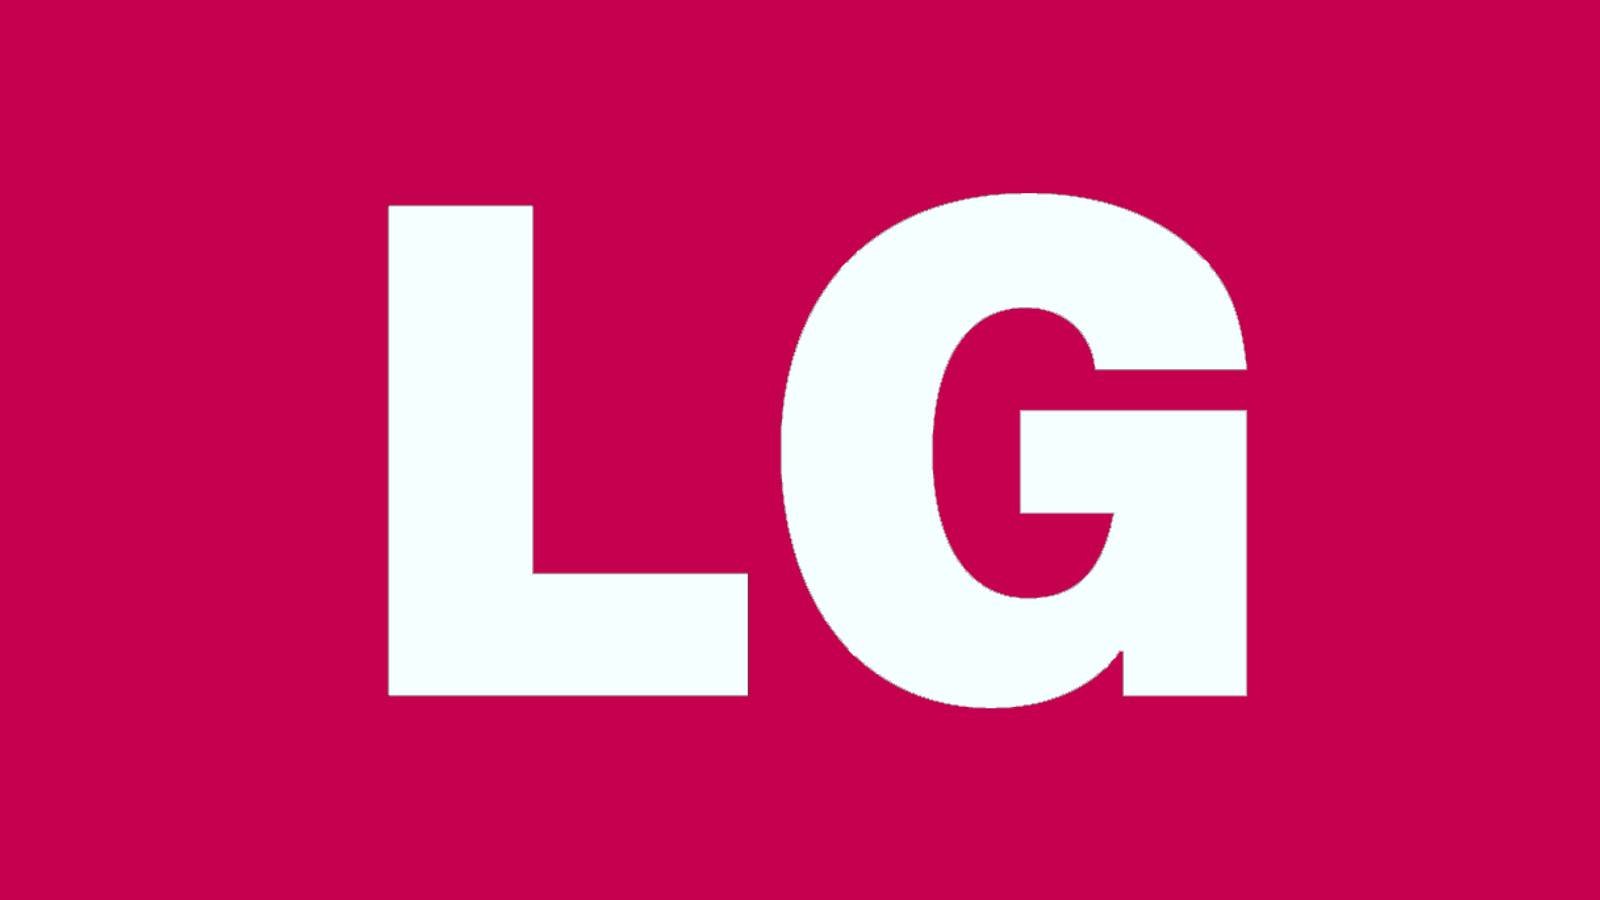 LG risolve il grave problema dei televisori popolari in tutto il mondo